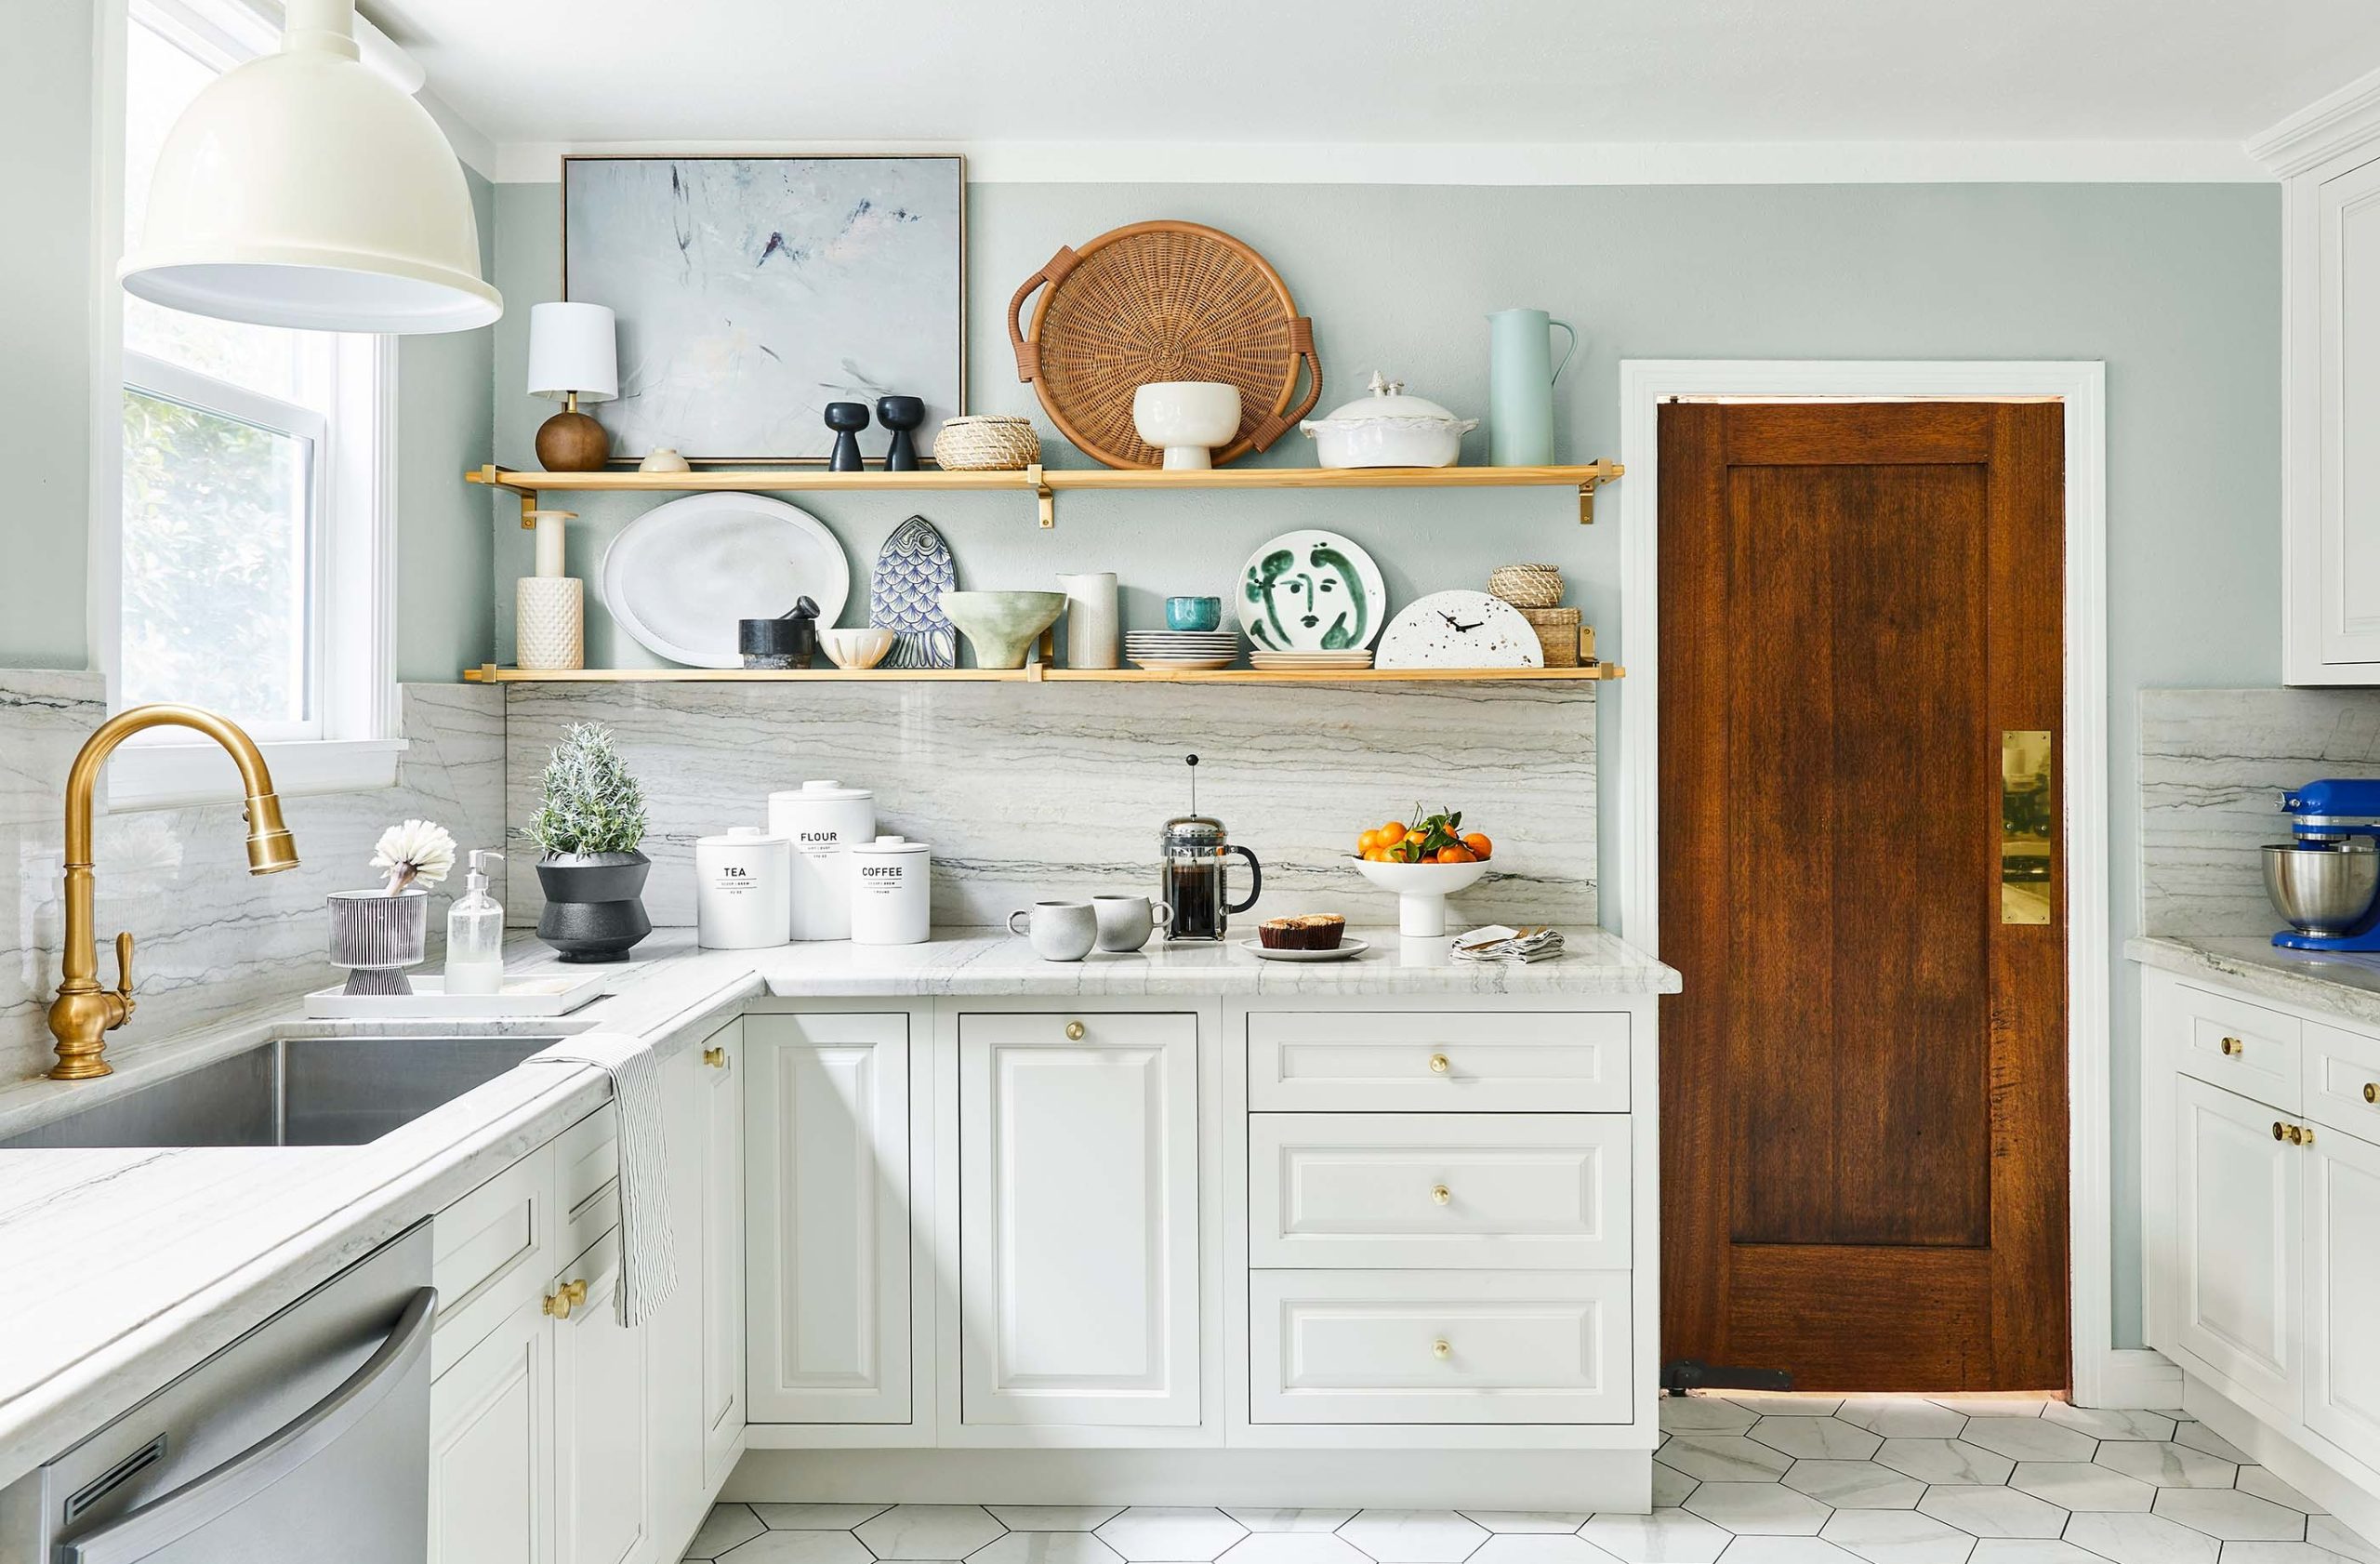 آشپزخانه سفید با شلف های چوبی - نوسازی آشپزخانه کم هزینه